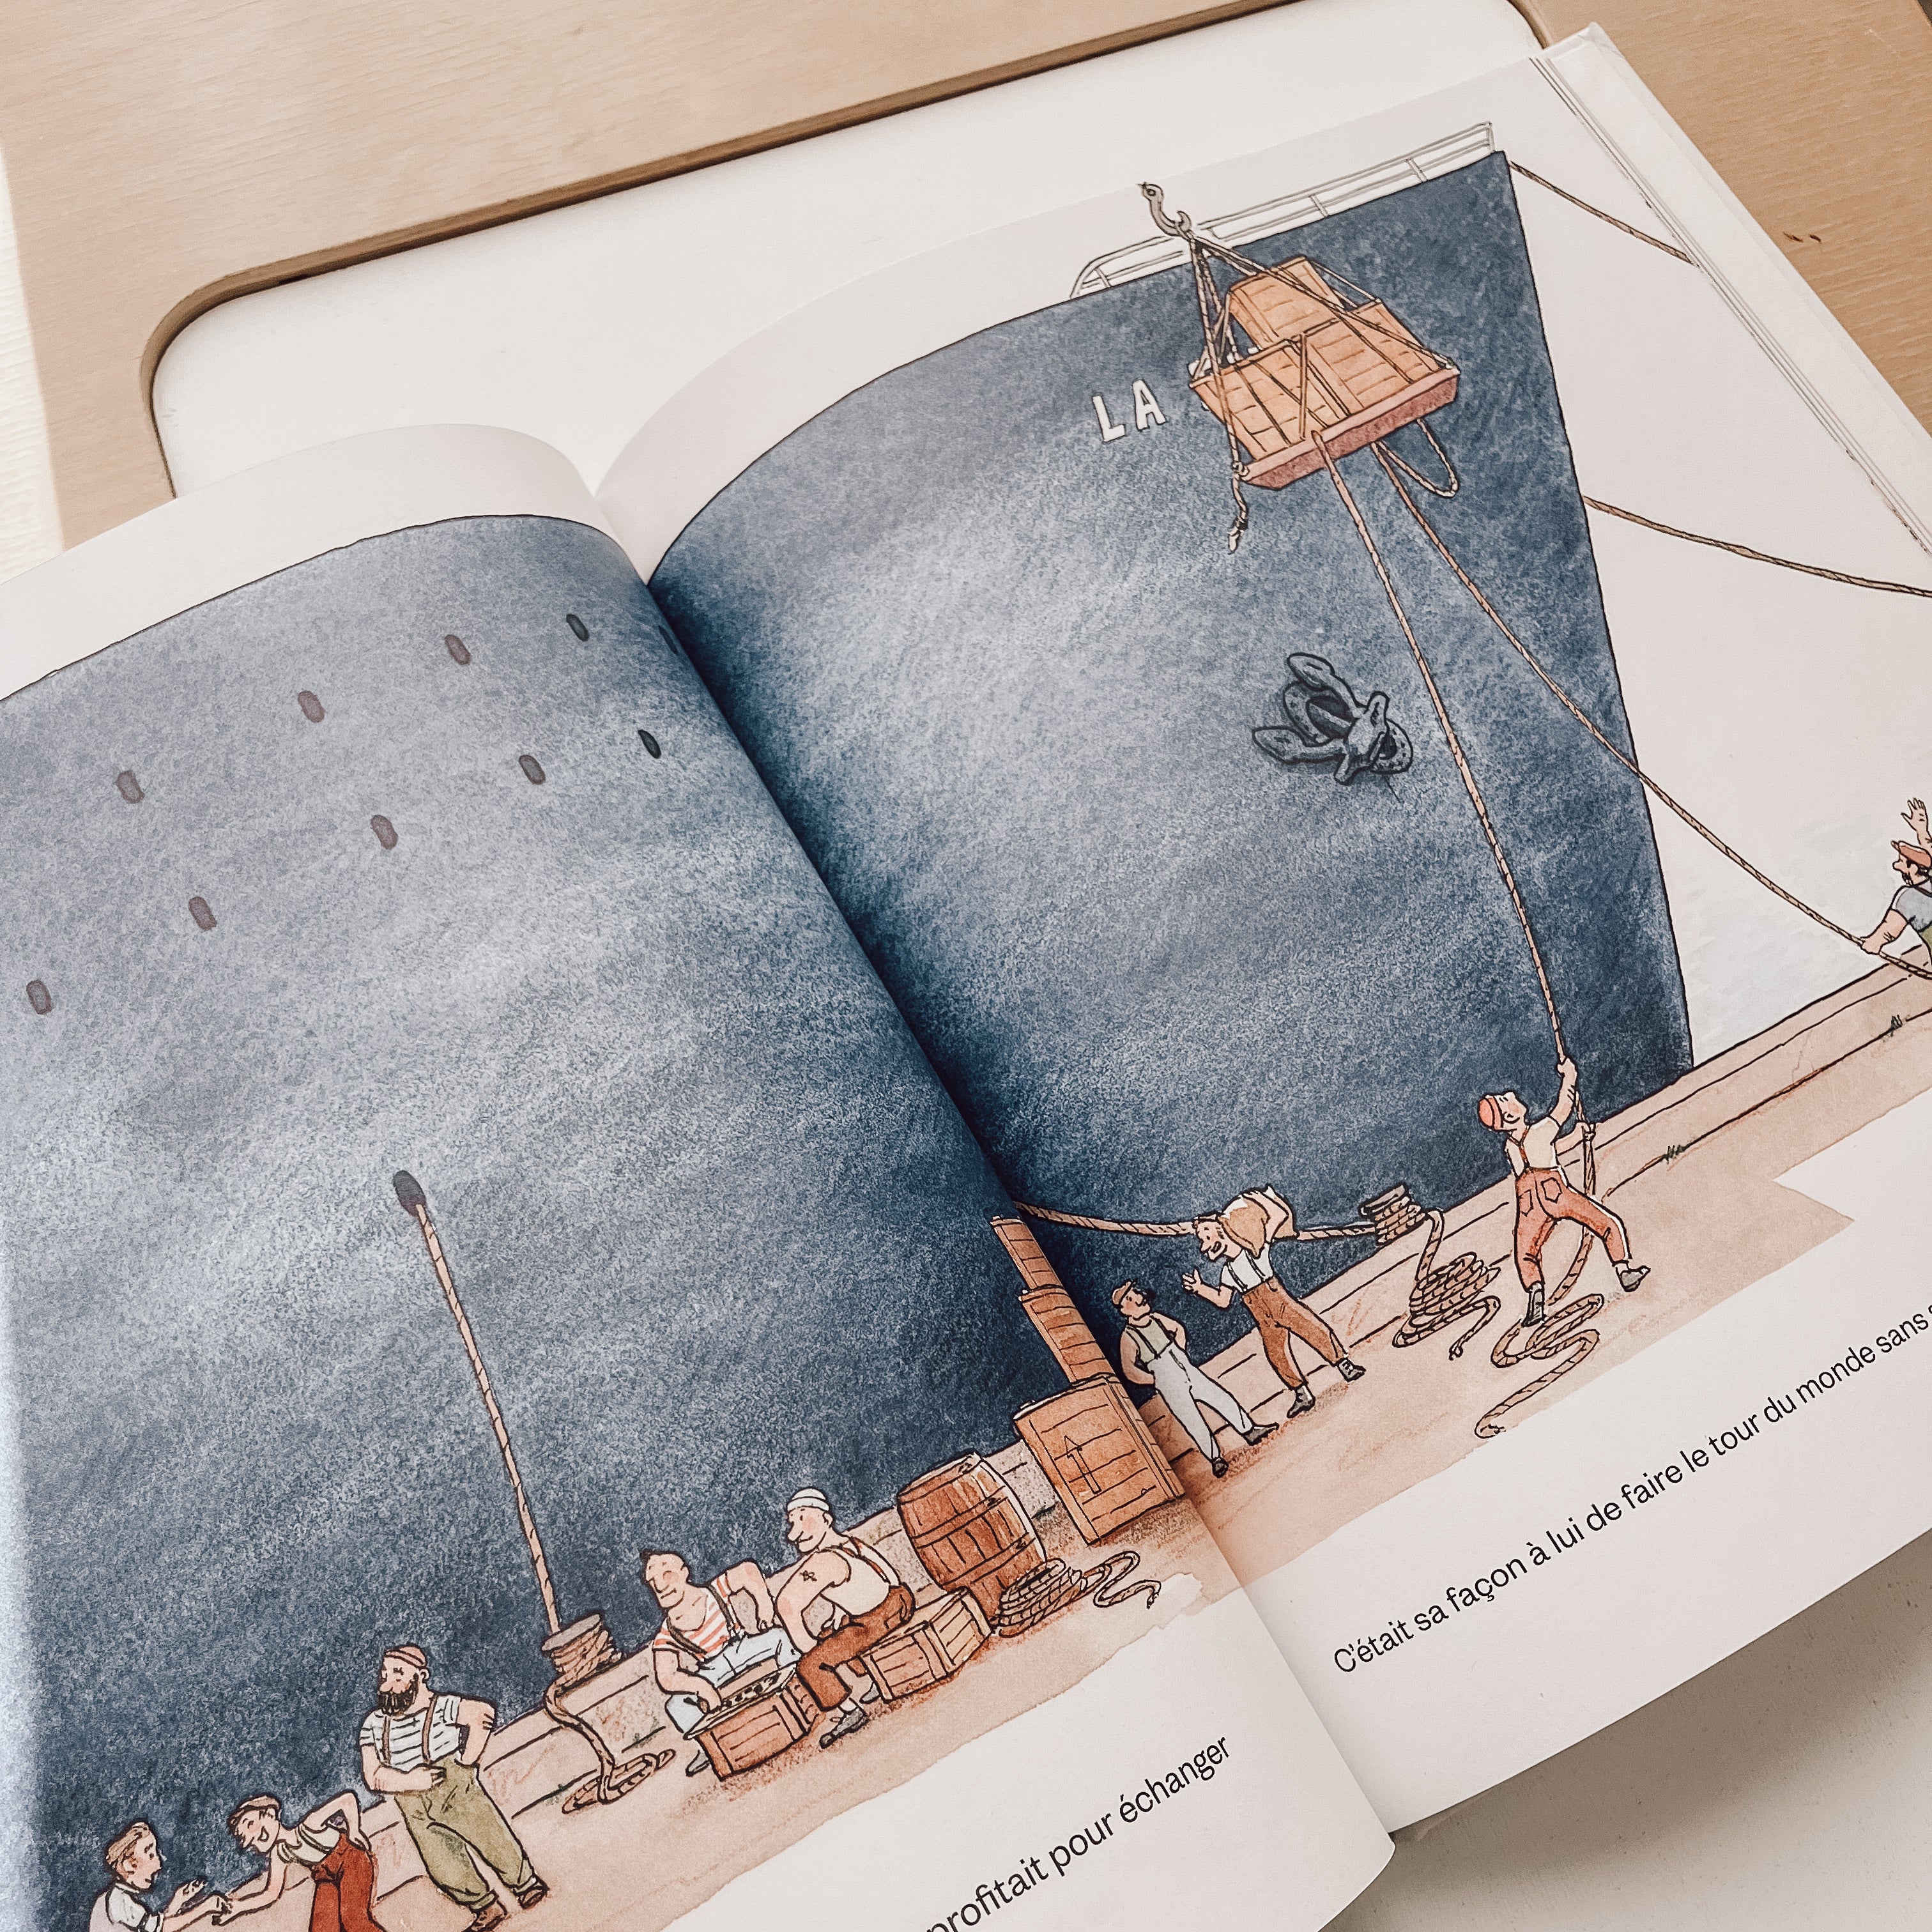 Livre d'histoire - La course de petits bateaux